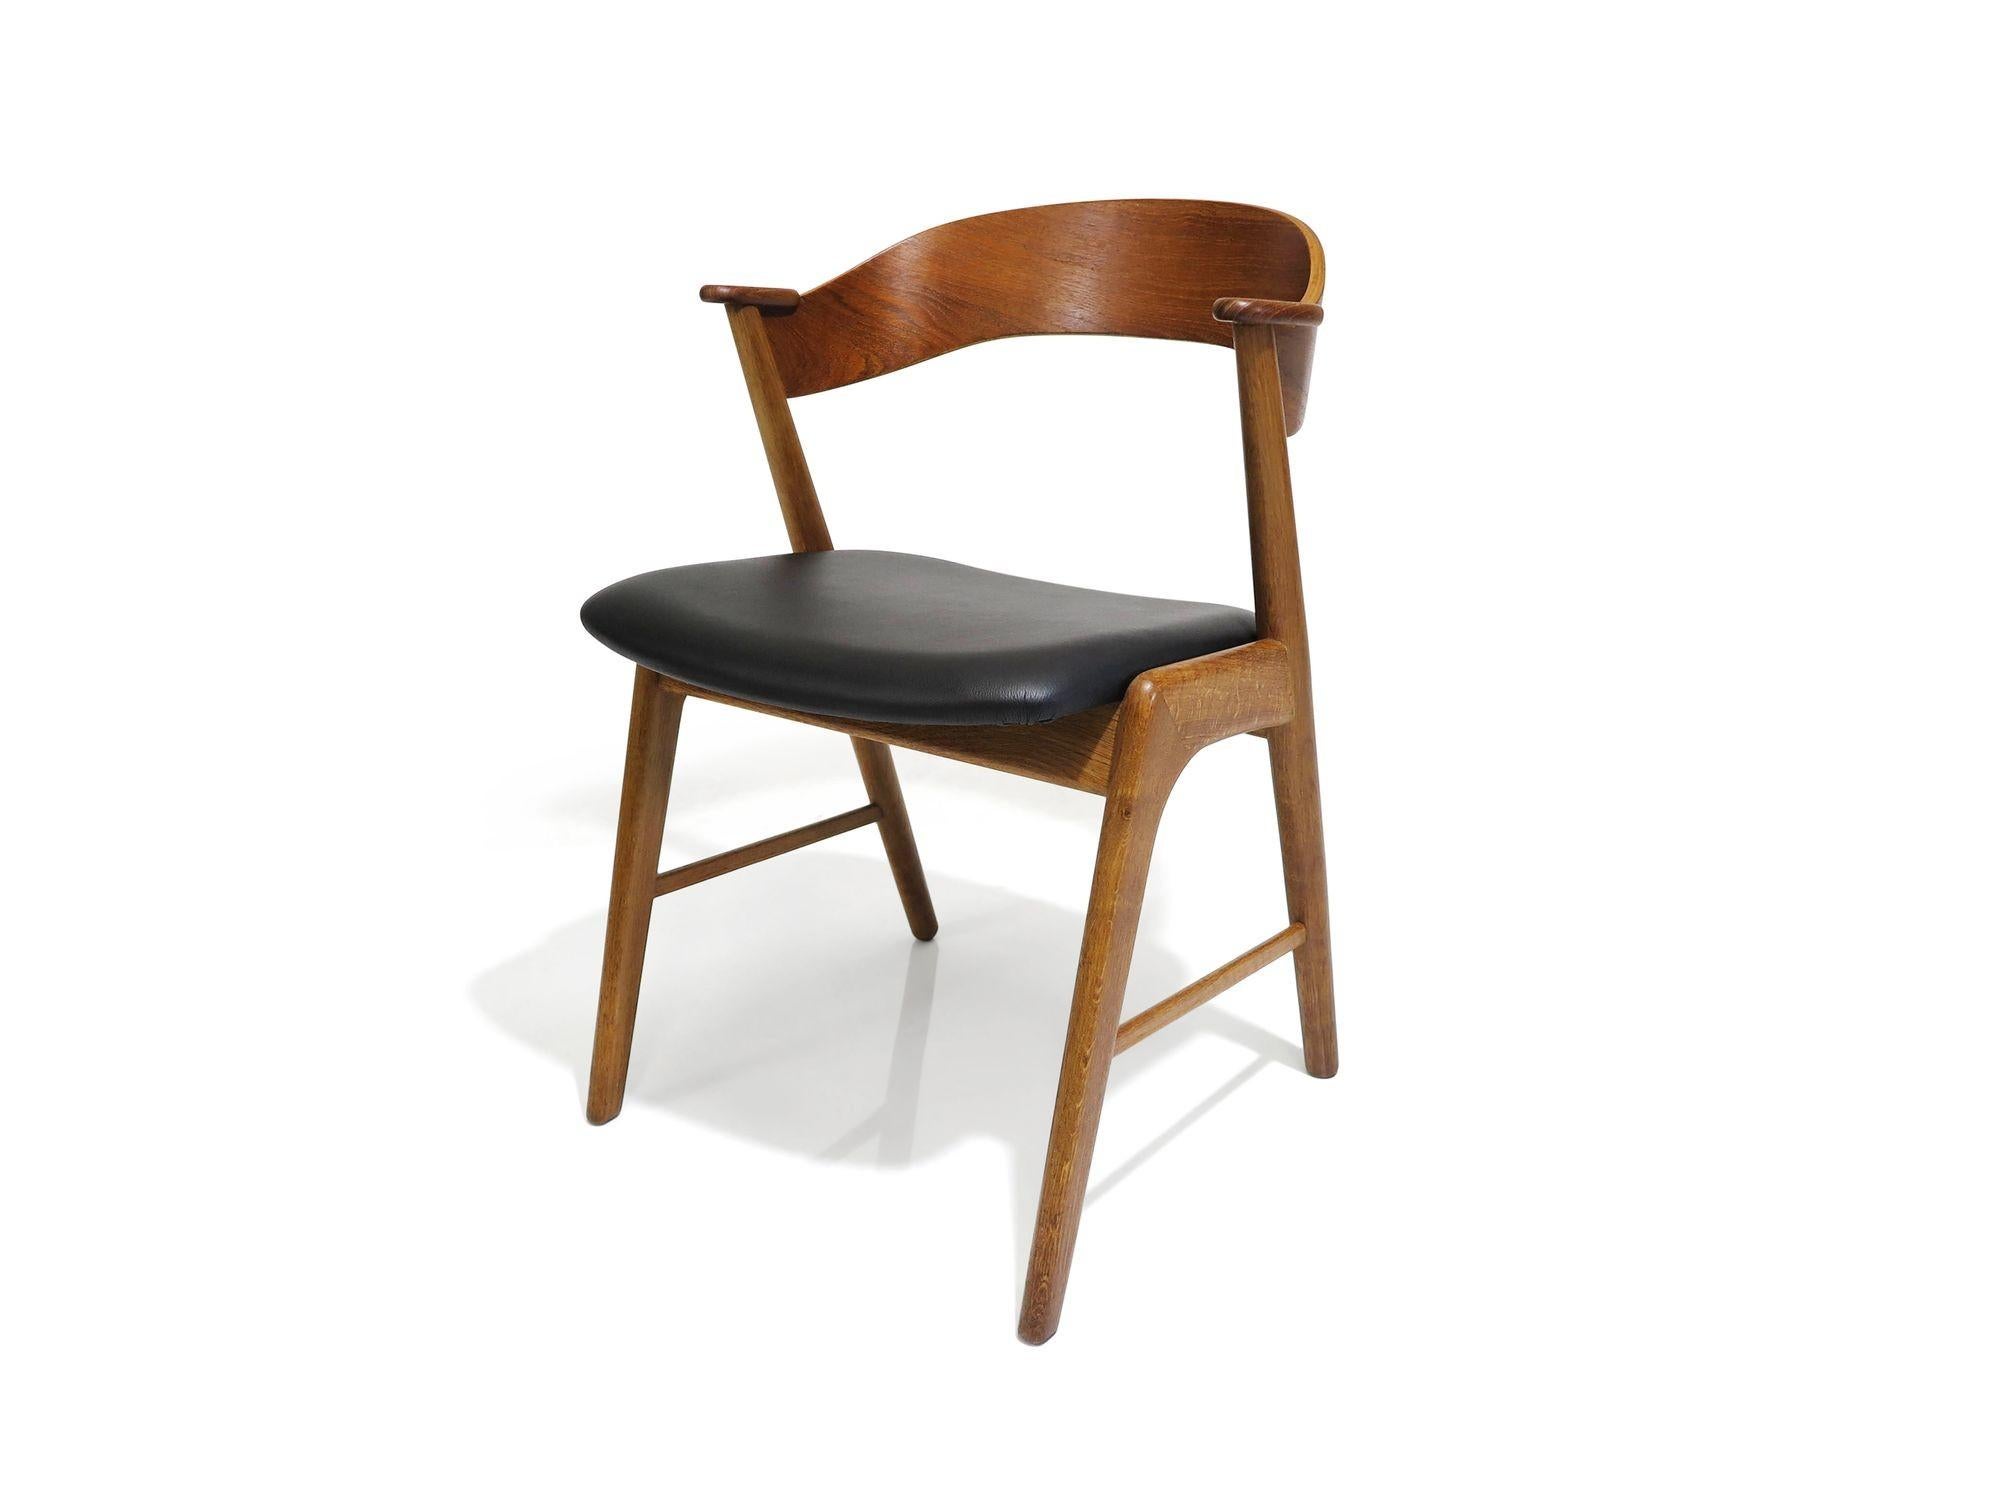 Satz von vier dänischen Esszimmerstühlen aus der Mitte des Jahrhunderts, entworfen von Kai Kristiansen, 1955, Dänemark. Die Stühle werden in Handarbeit aus massiven Eichenholzrahmen mit dramatisch geschwungener Teakholz-Rückenlehne und Kreuztraverse